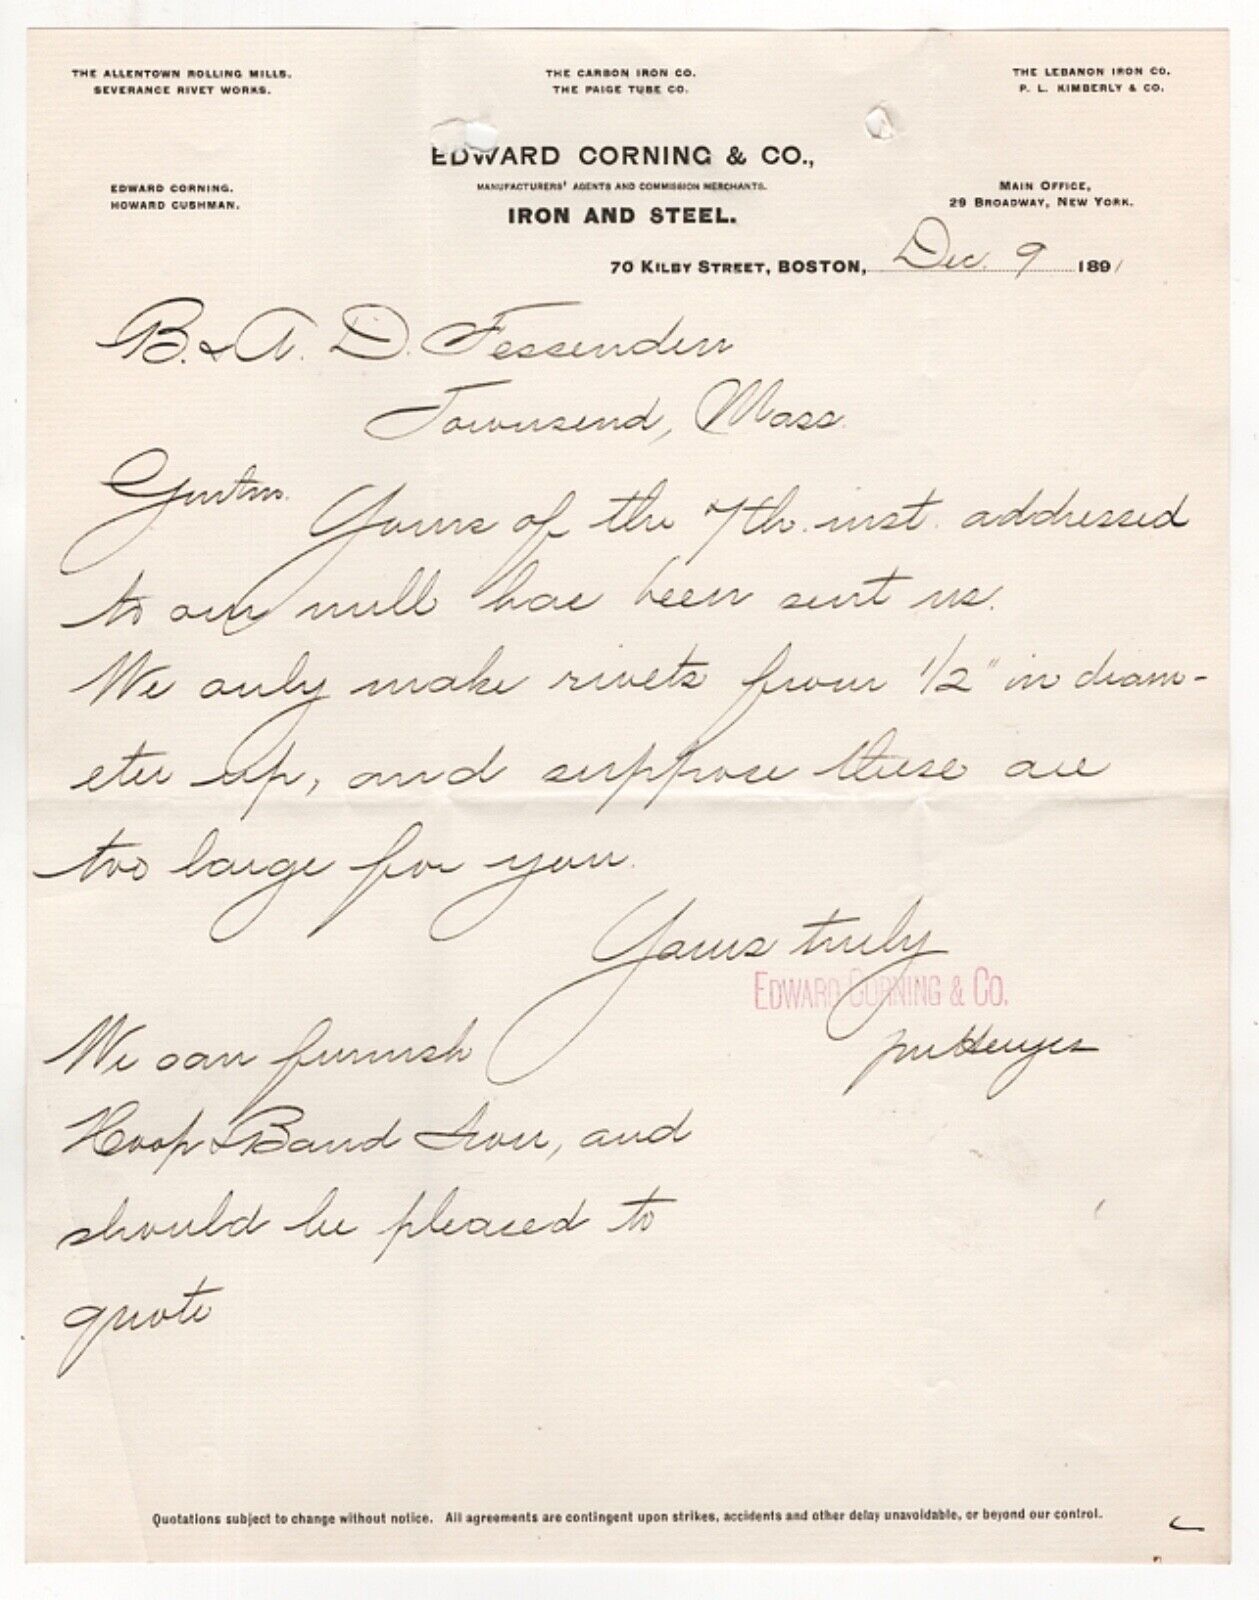 1891 EDWARD CORNING CO LETTERHEAD IRON STEEL KILBY ST BOSTON MA FESSENDEN